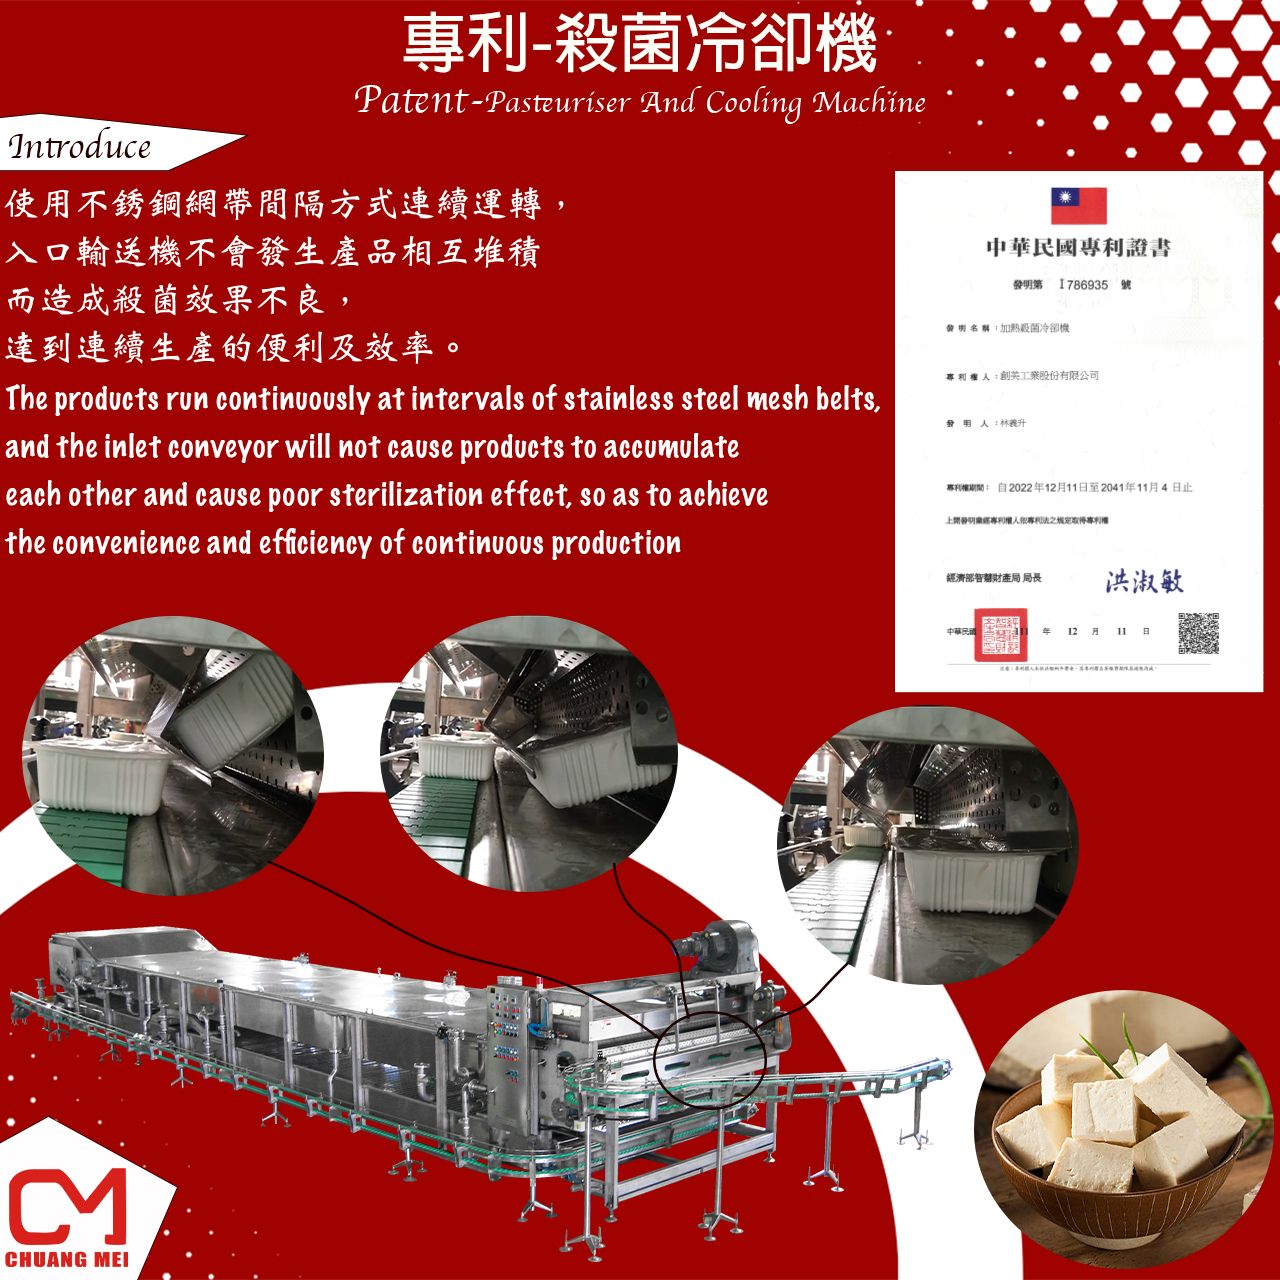 Máy thanh trùng và máy làm mát do Chuang Mei thiết kế và phát triển.